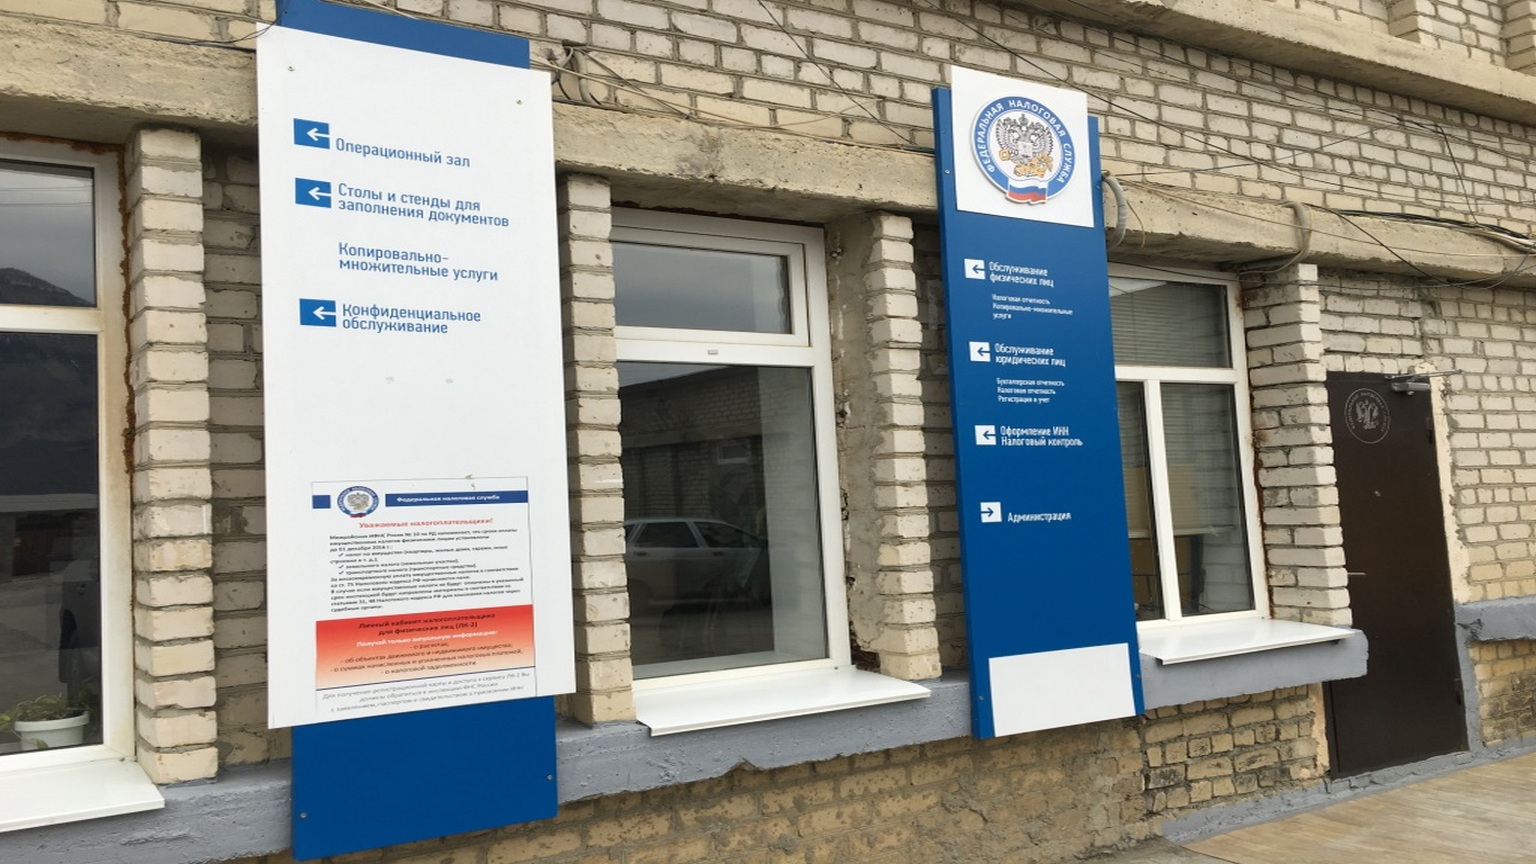 Операционный зал Межрайонная инспекция Федеральной налоговой службы № 10 по Республике Дагестан